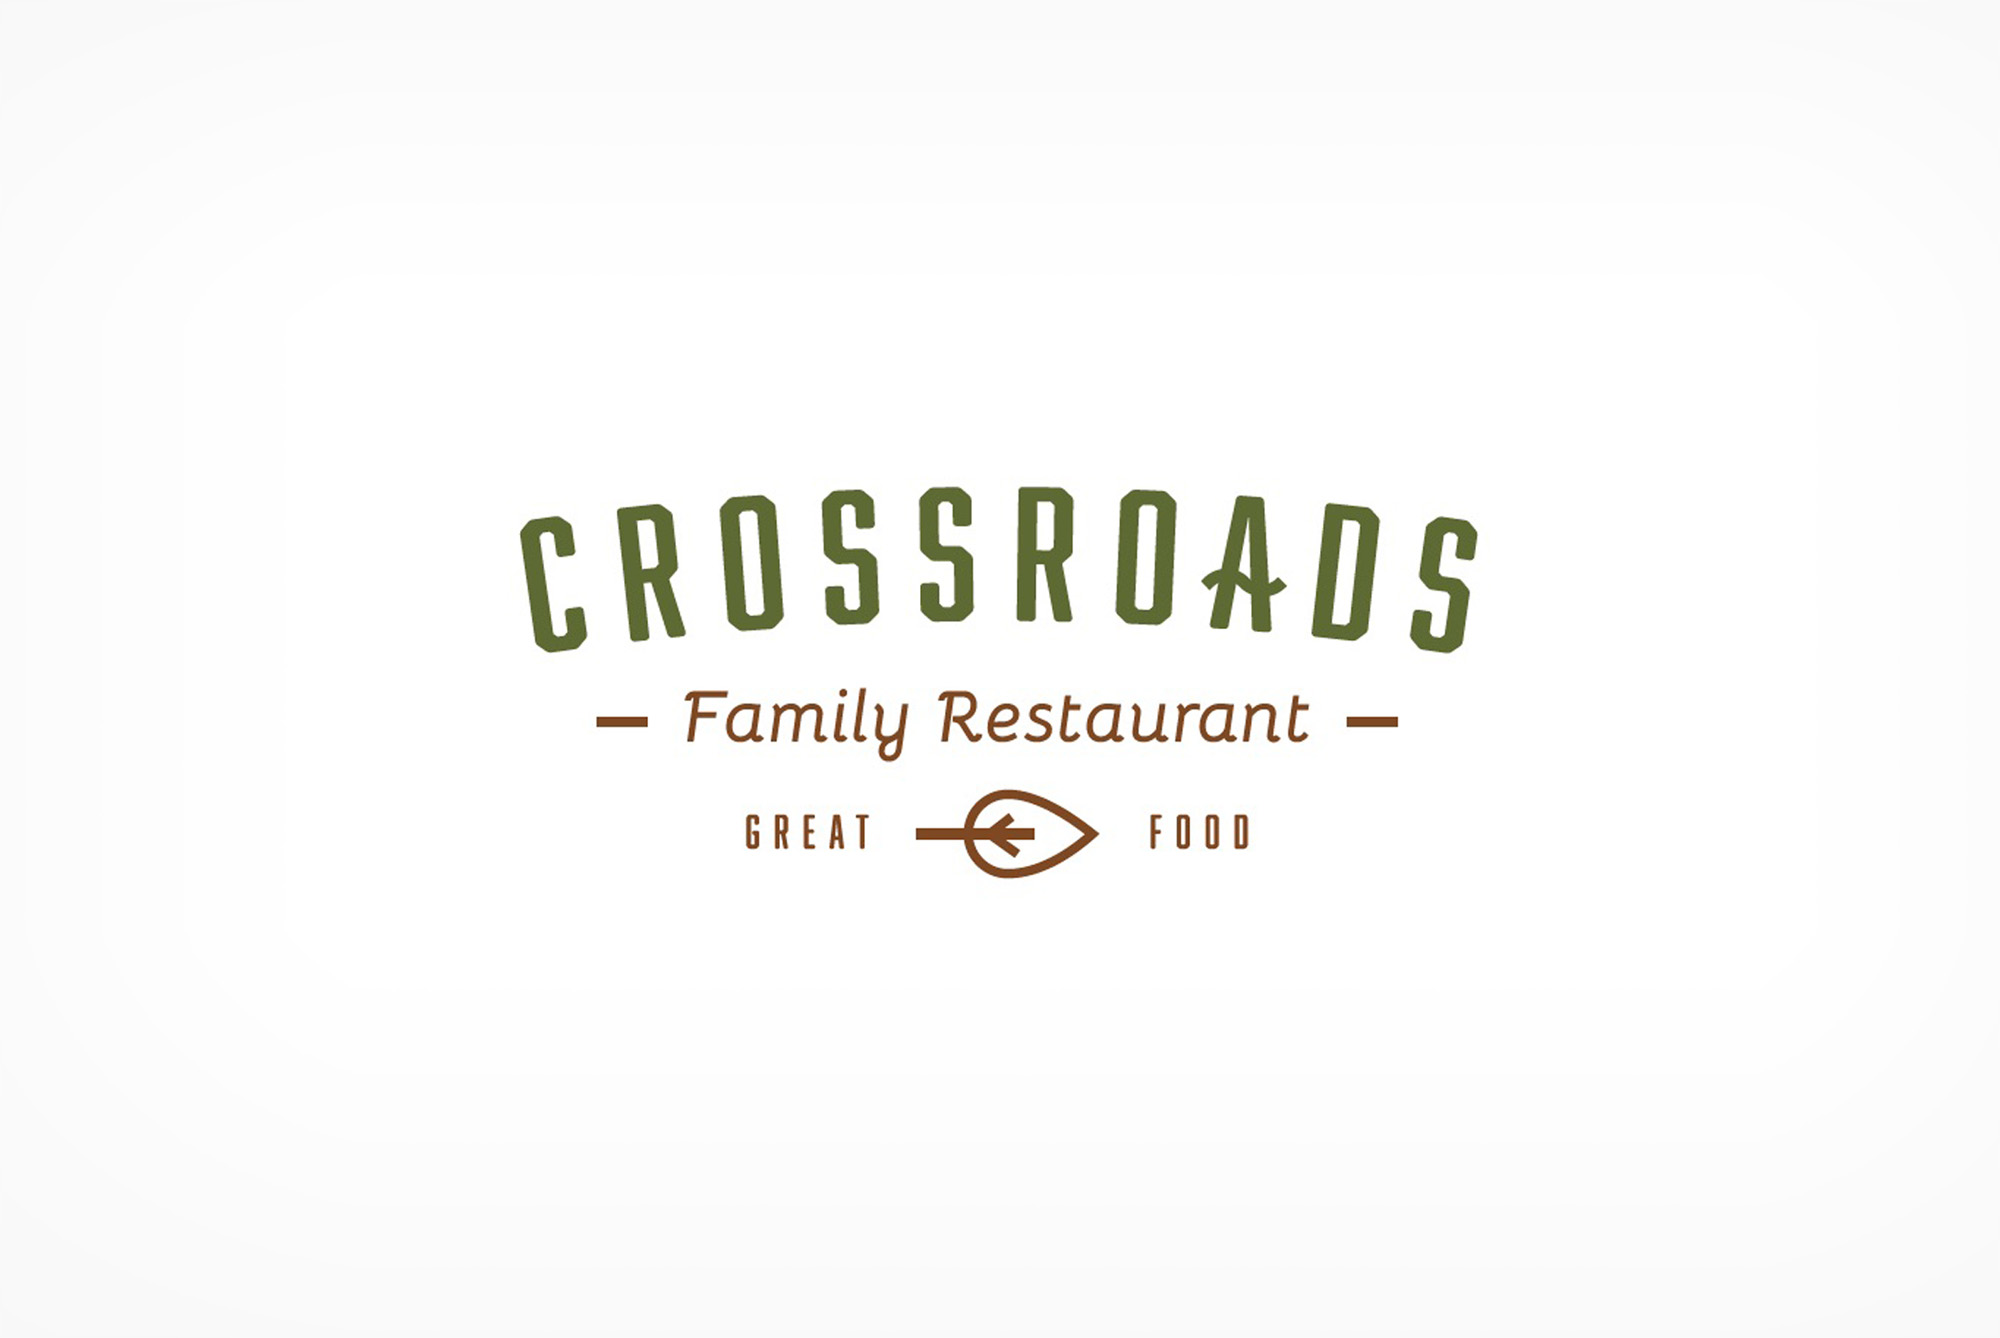 Crossroads Family Restaurant logo.